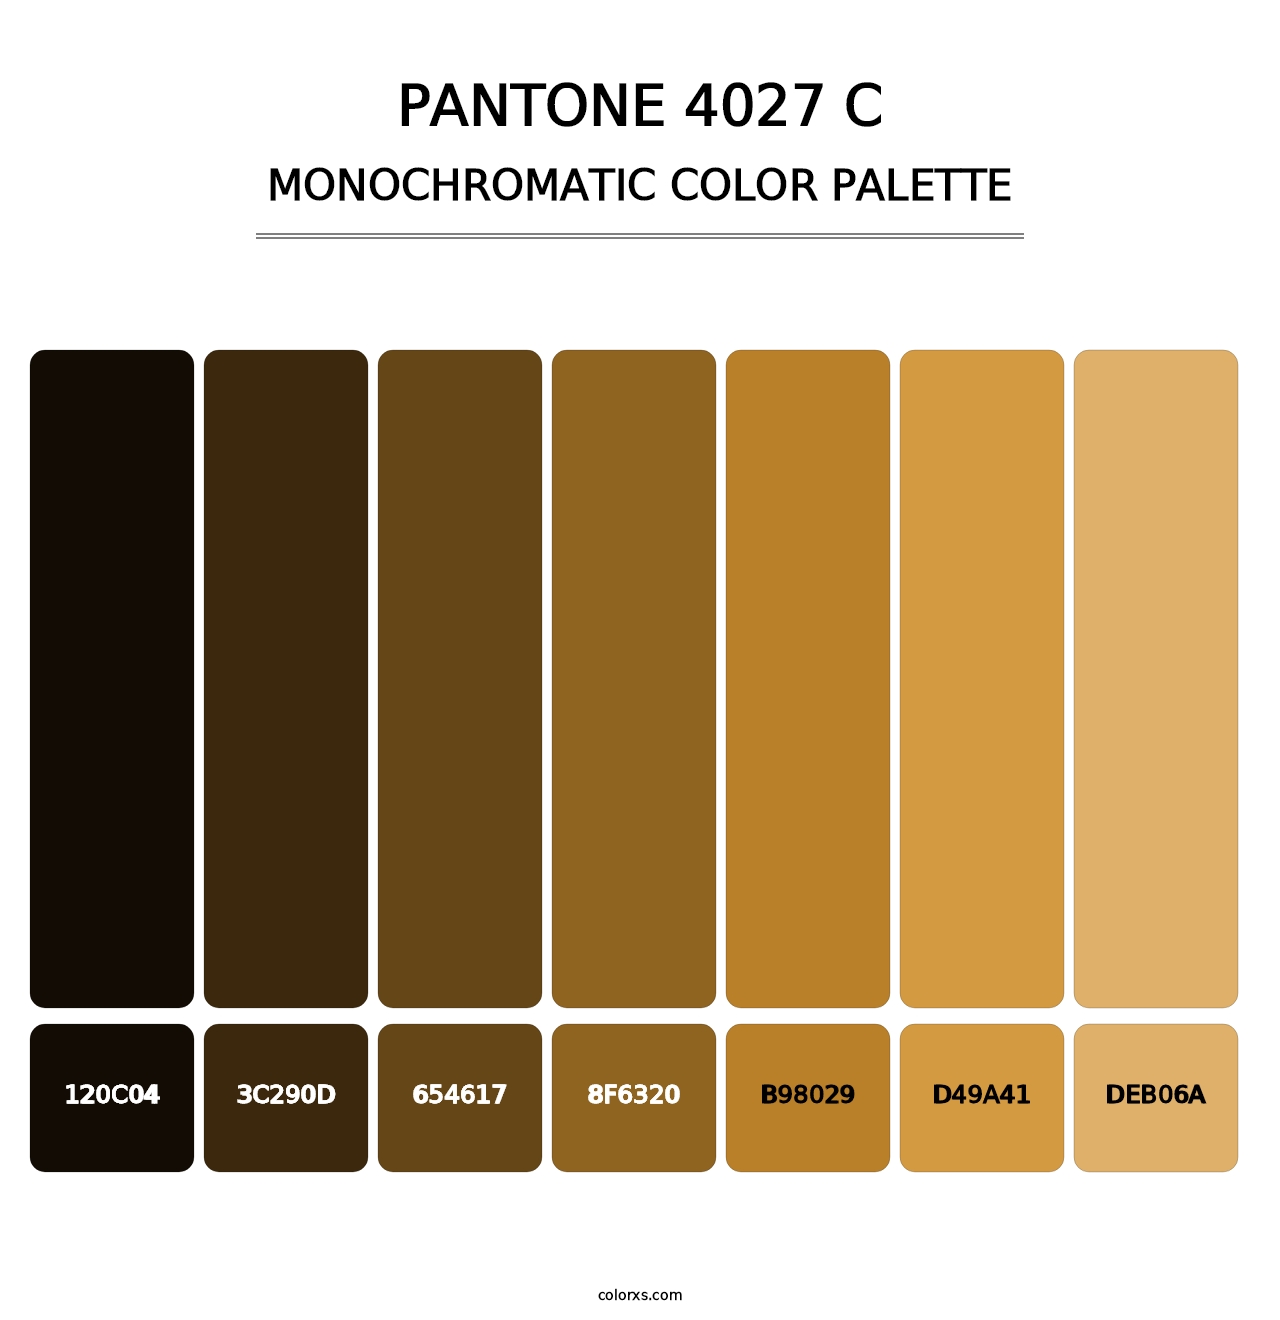 PANTONE 4027 C - Monochromatic Color Palette